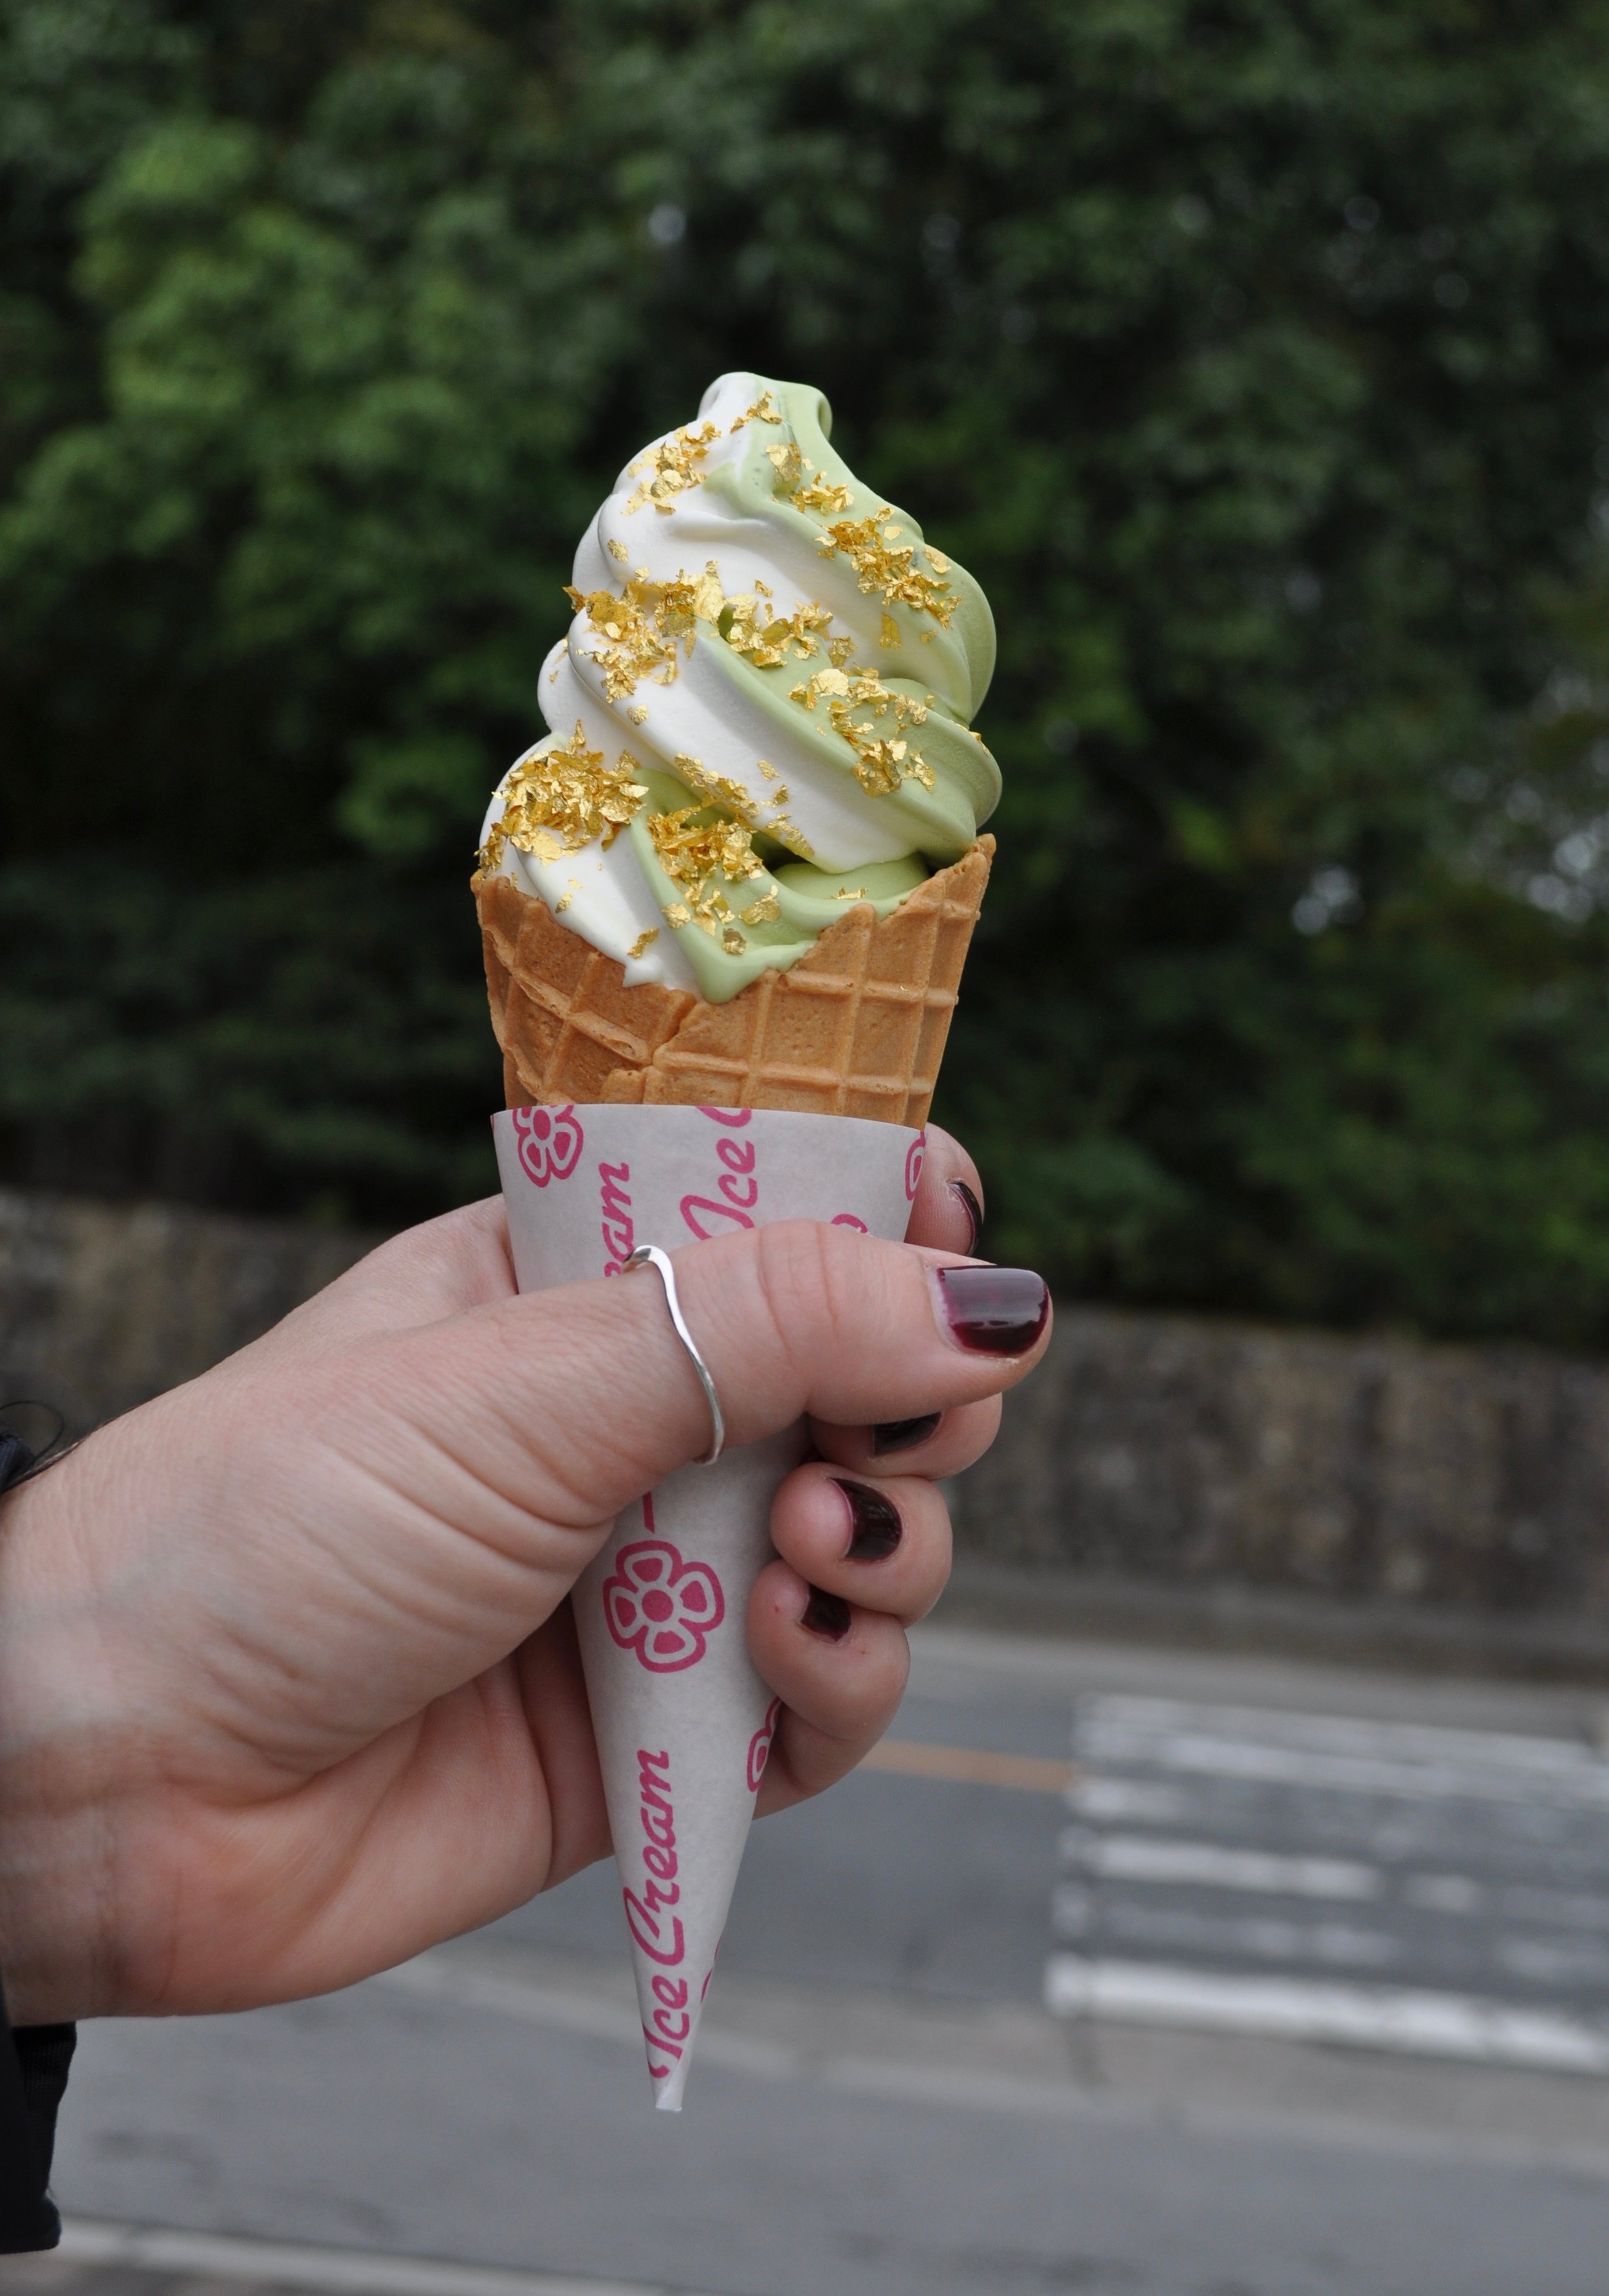 Green tea and vanilla swirl cone